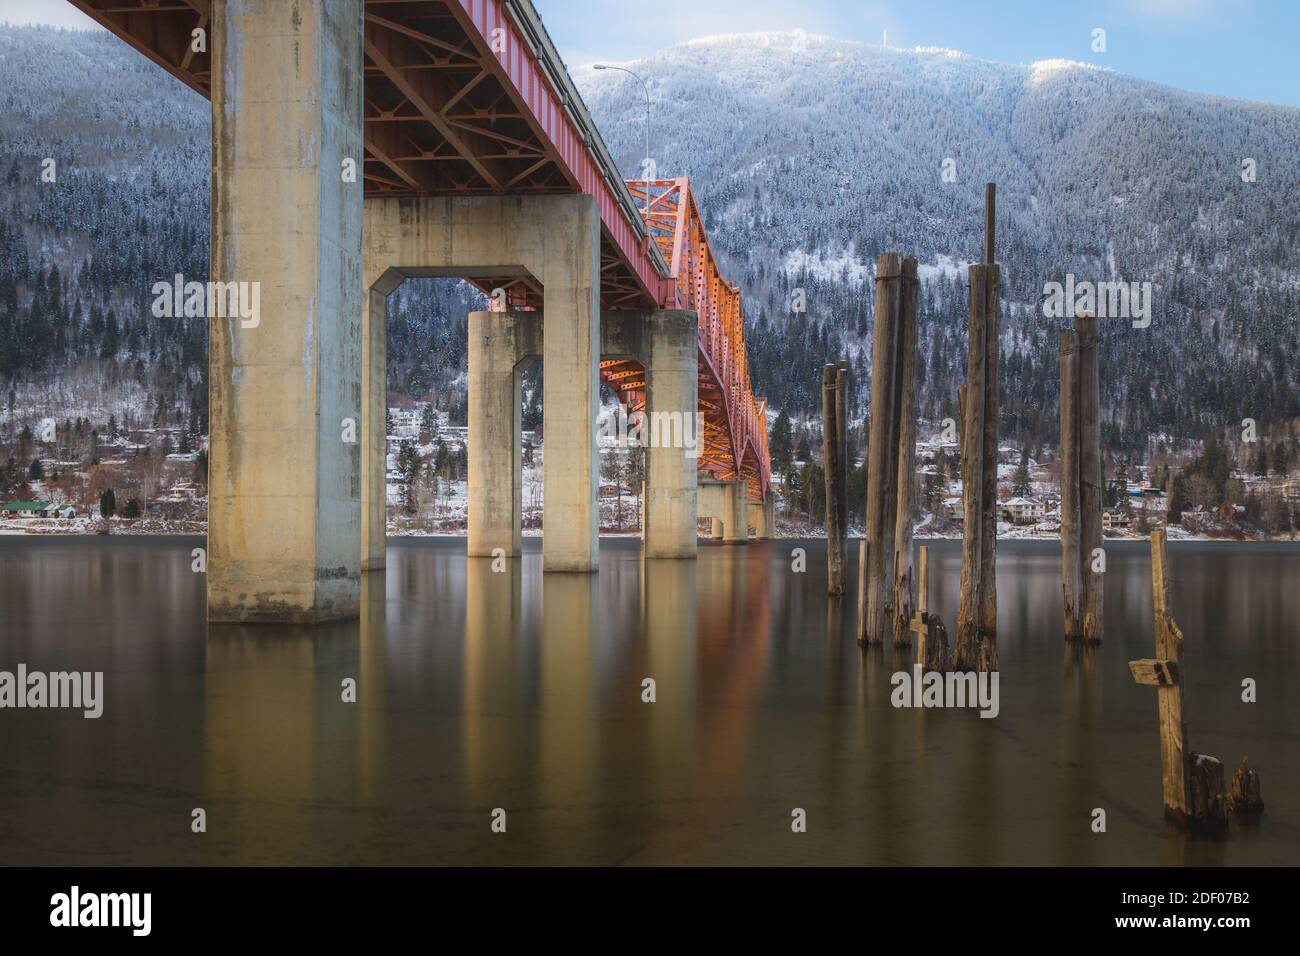 Ein schöner winterlicher Blick auf die Big Orange Bridge in Nelson, B.C. an einem sonnigen Tag. Stockfoto